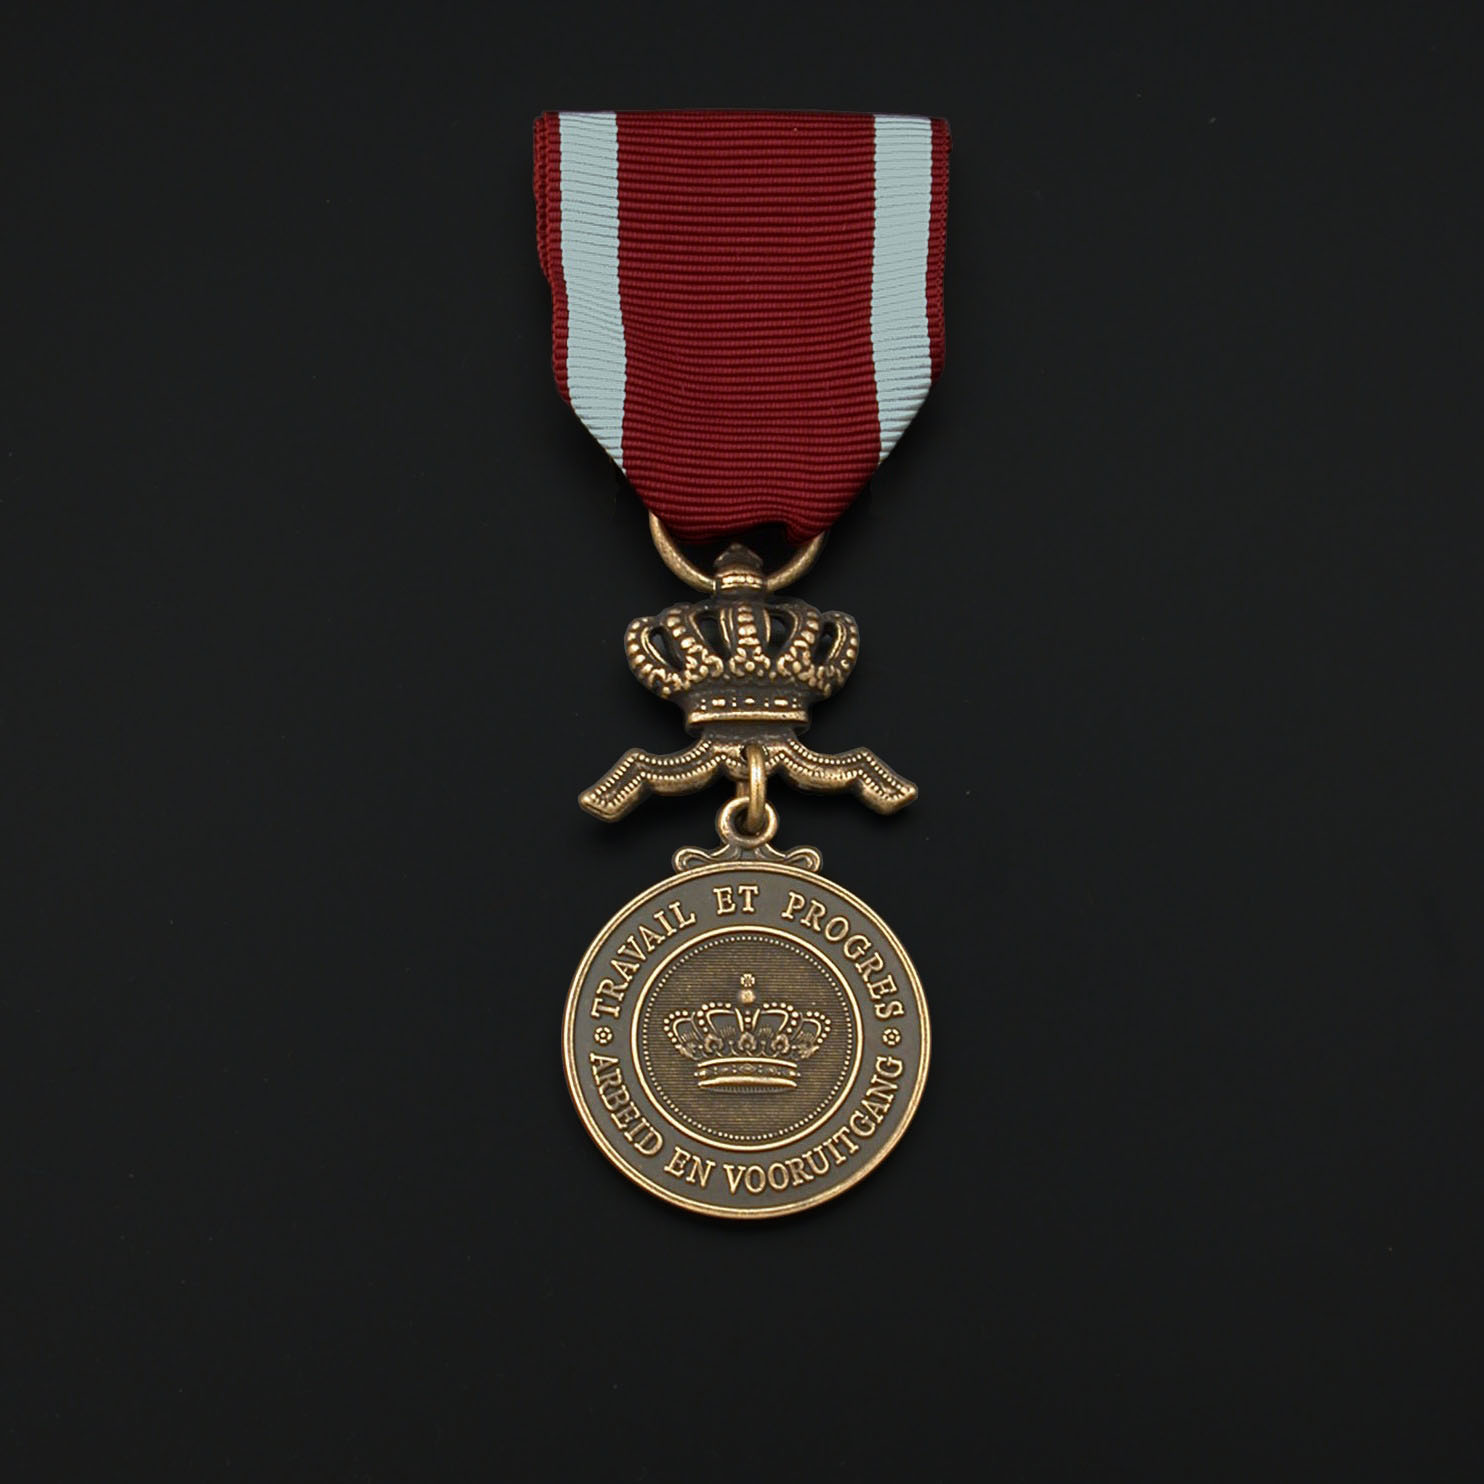 officieel-ereteken-kroonorde-bronzen-medaille-01-01-03-kroonorde-bronzen-medaille-officieel-model.jpg